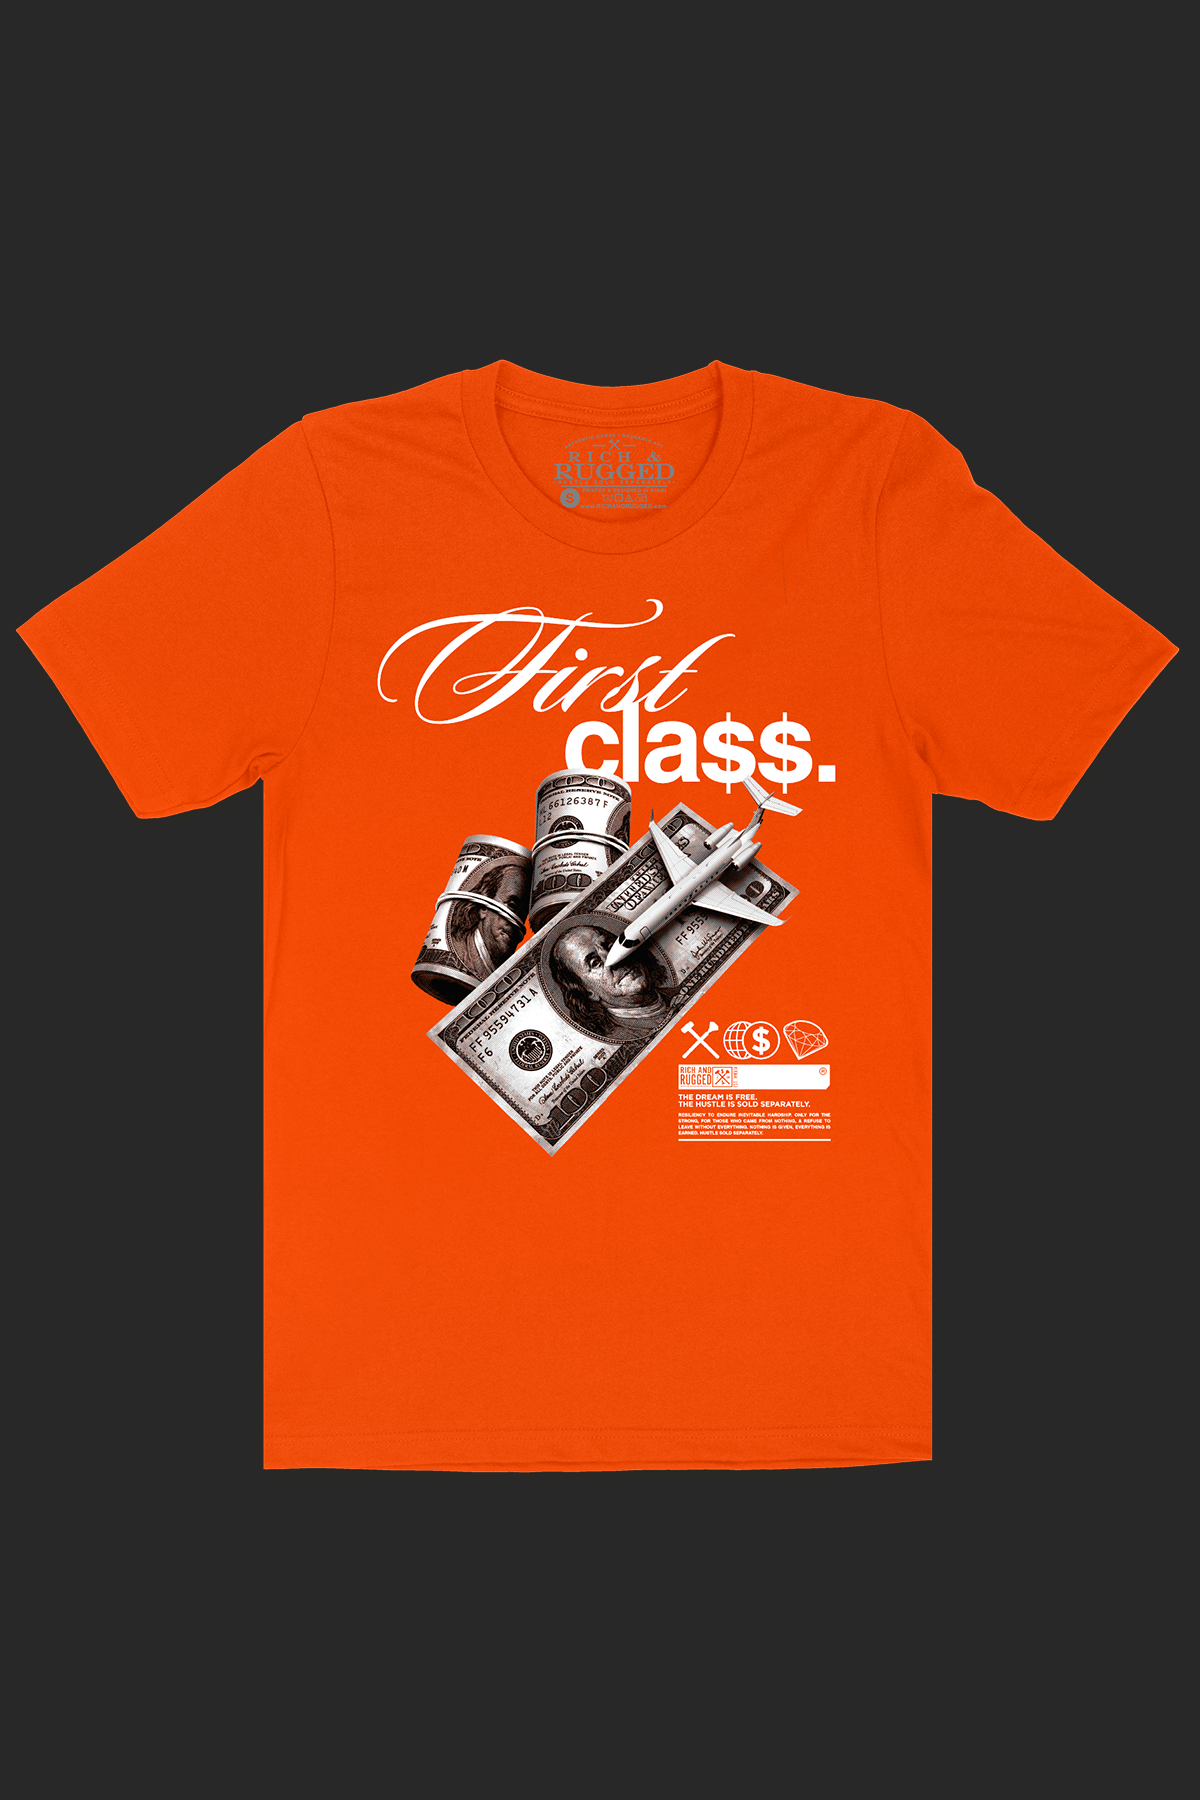 First Class on a Orange Shirt